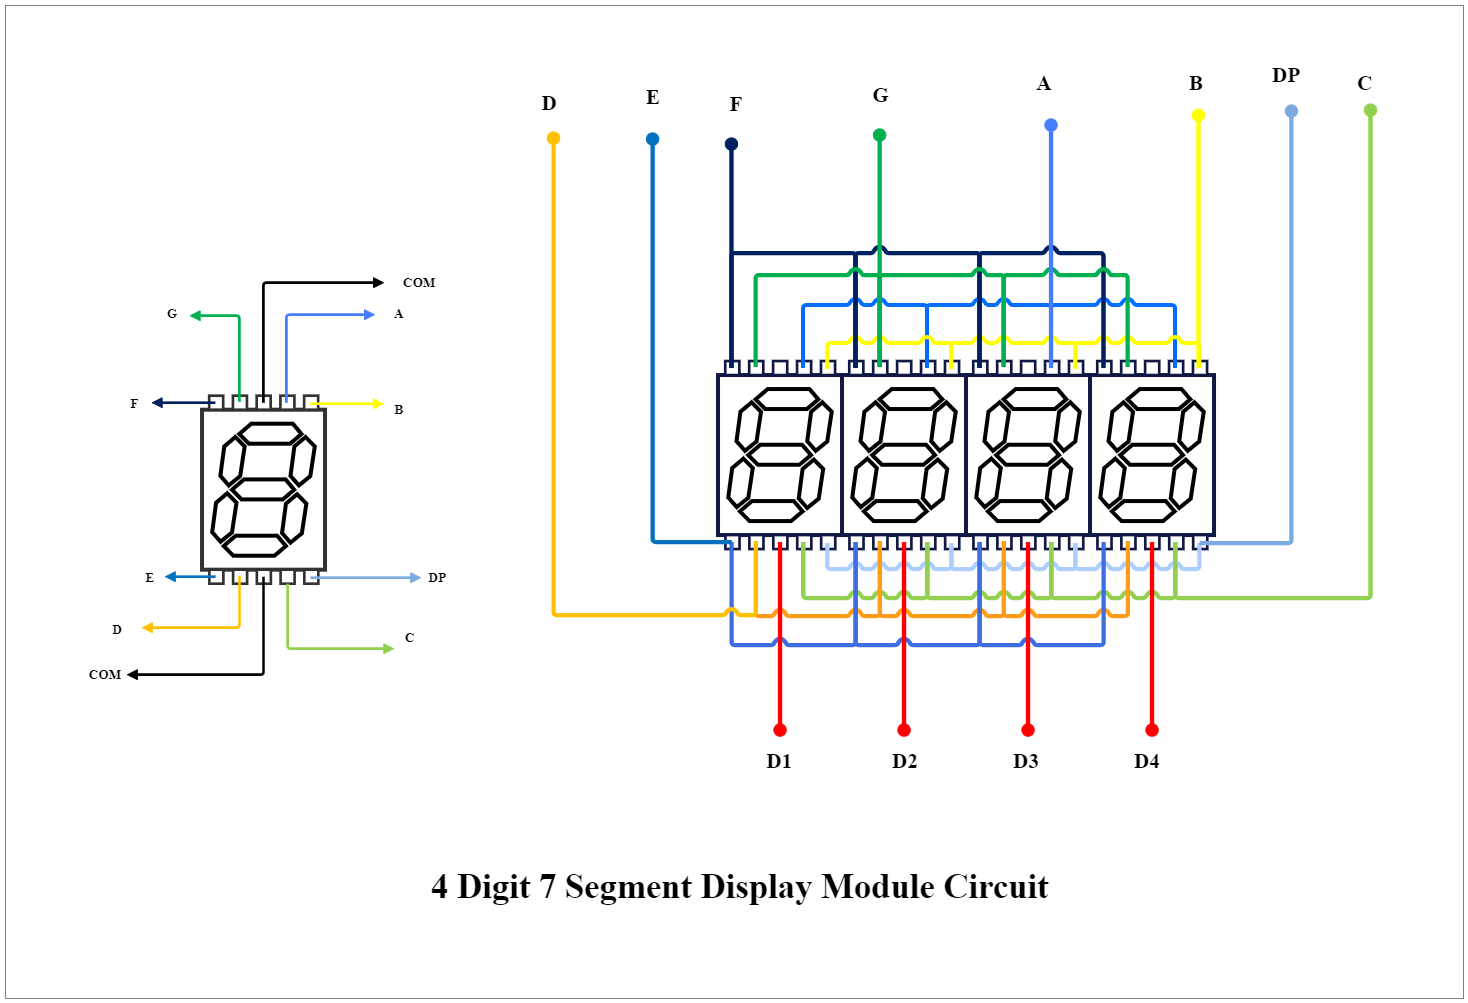 4 Digit 7 Segment Display Module Circuit